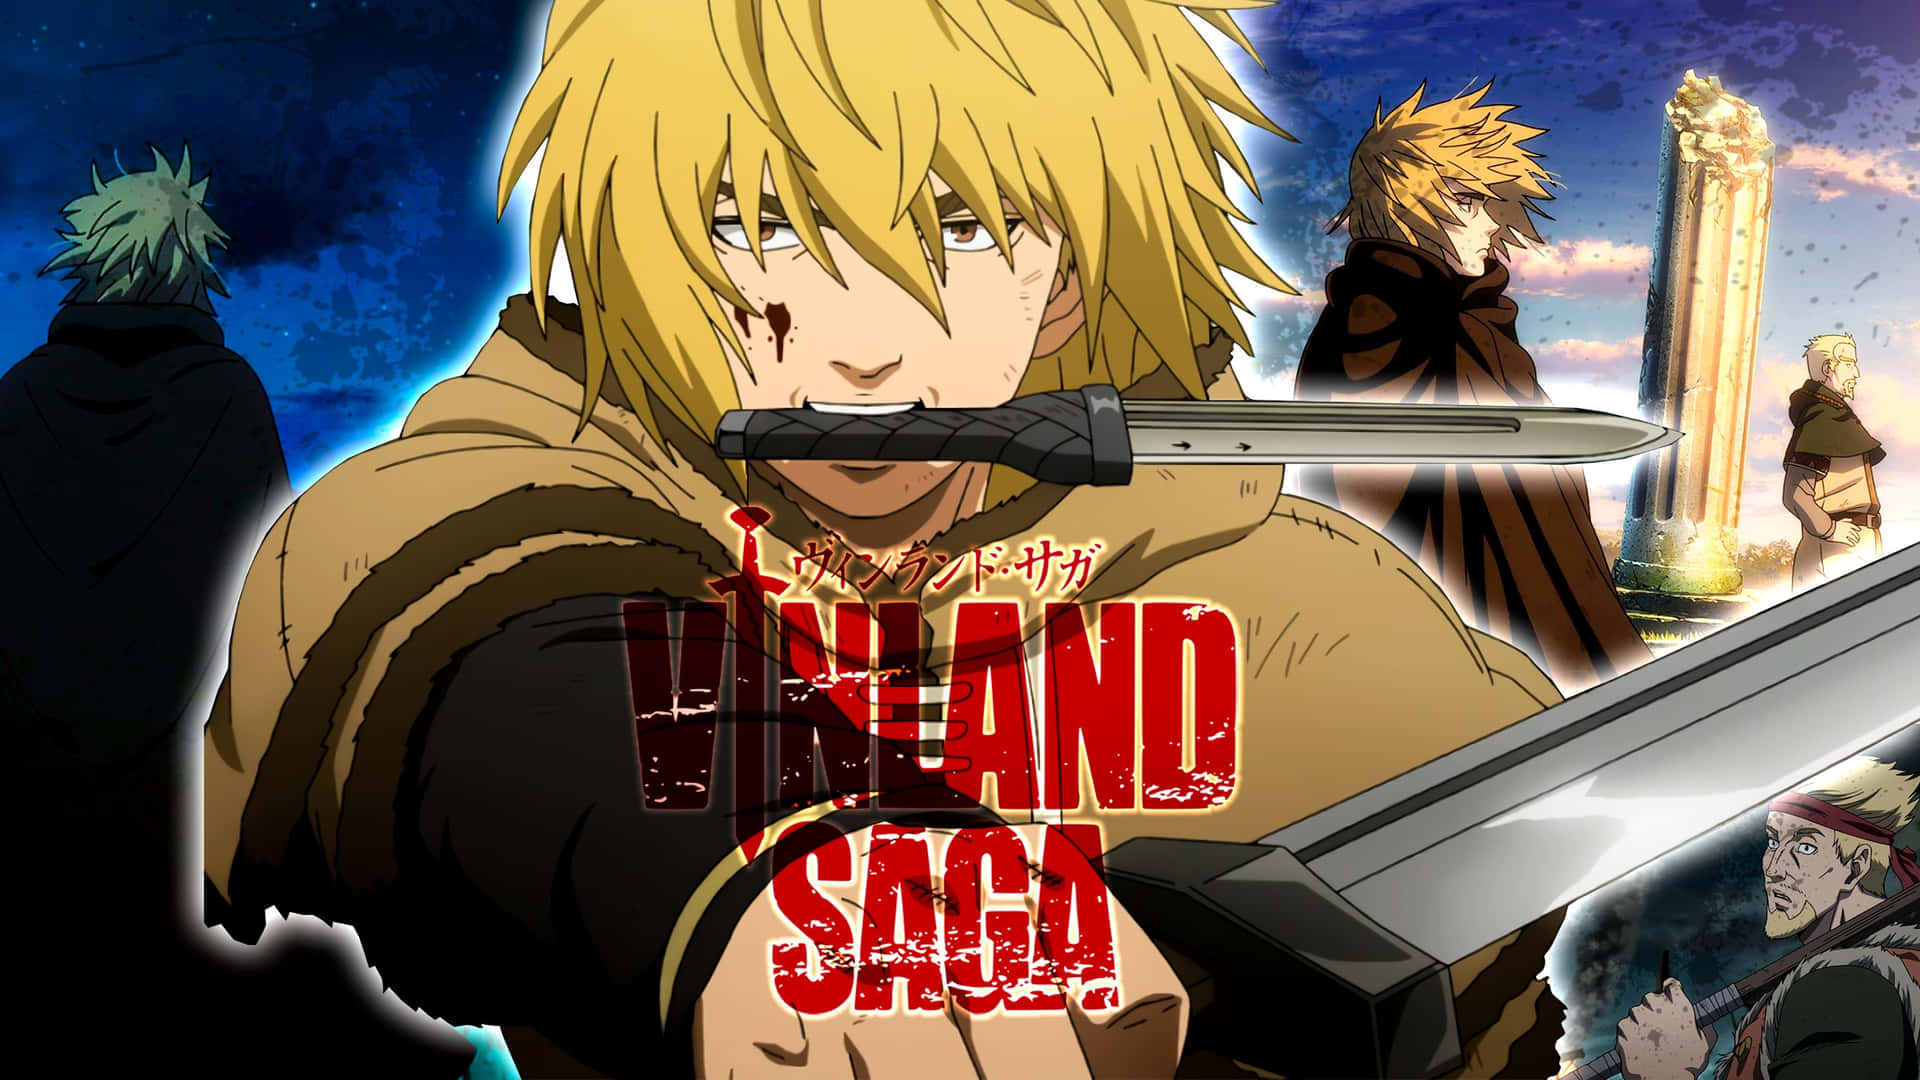 Vinland Saga Anime Characters Wallpaper